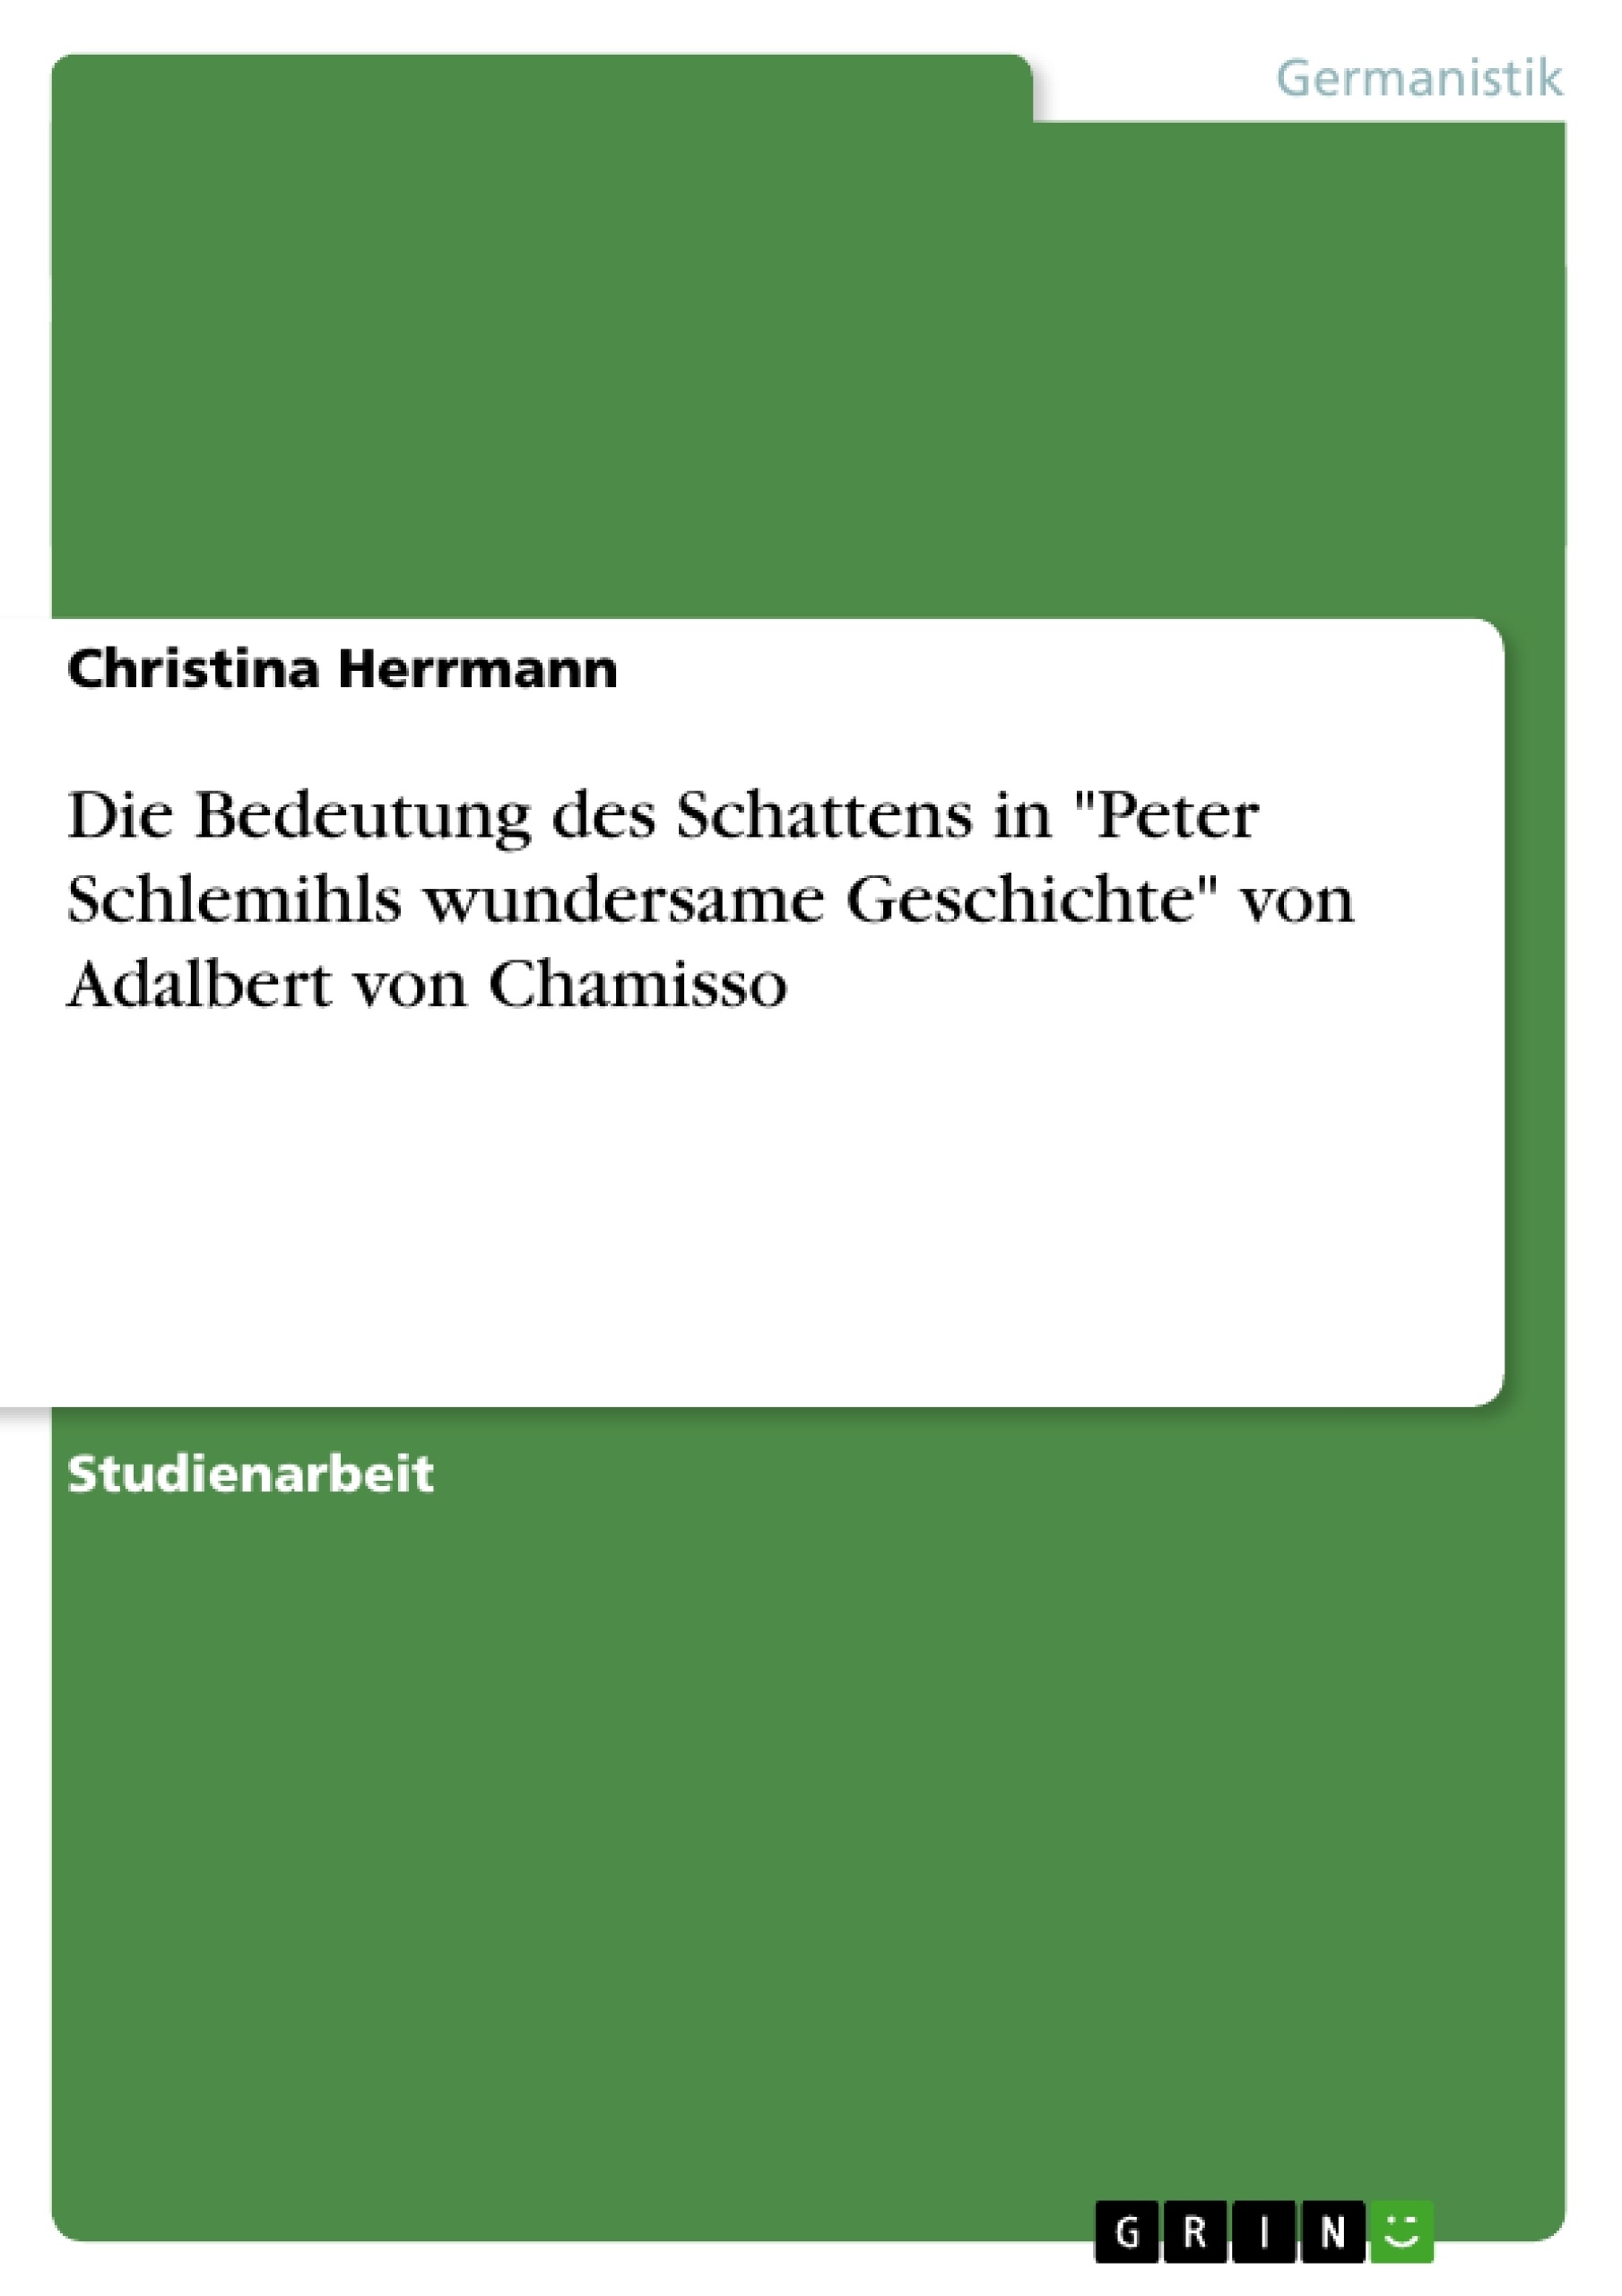 Título: Die Bedeutung des Schattens in "Peter Schlemihls wundersame Geschichte" von Adalbert von Chamisso